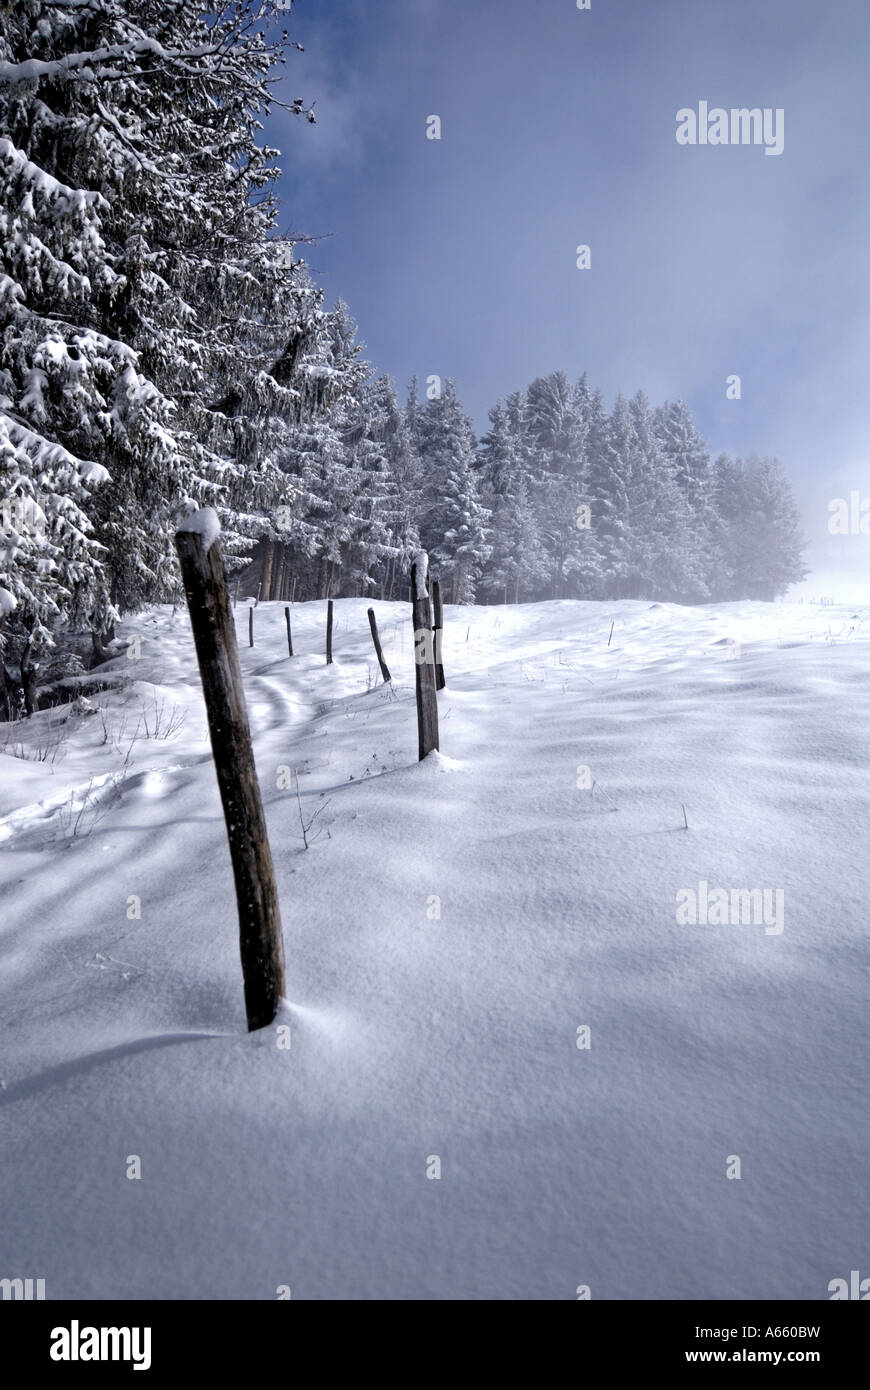 Snowy scene Villars sur Ollon Switzerland Alps Stock Photo